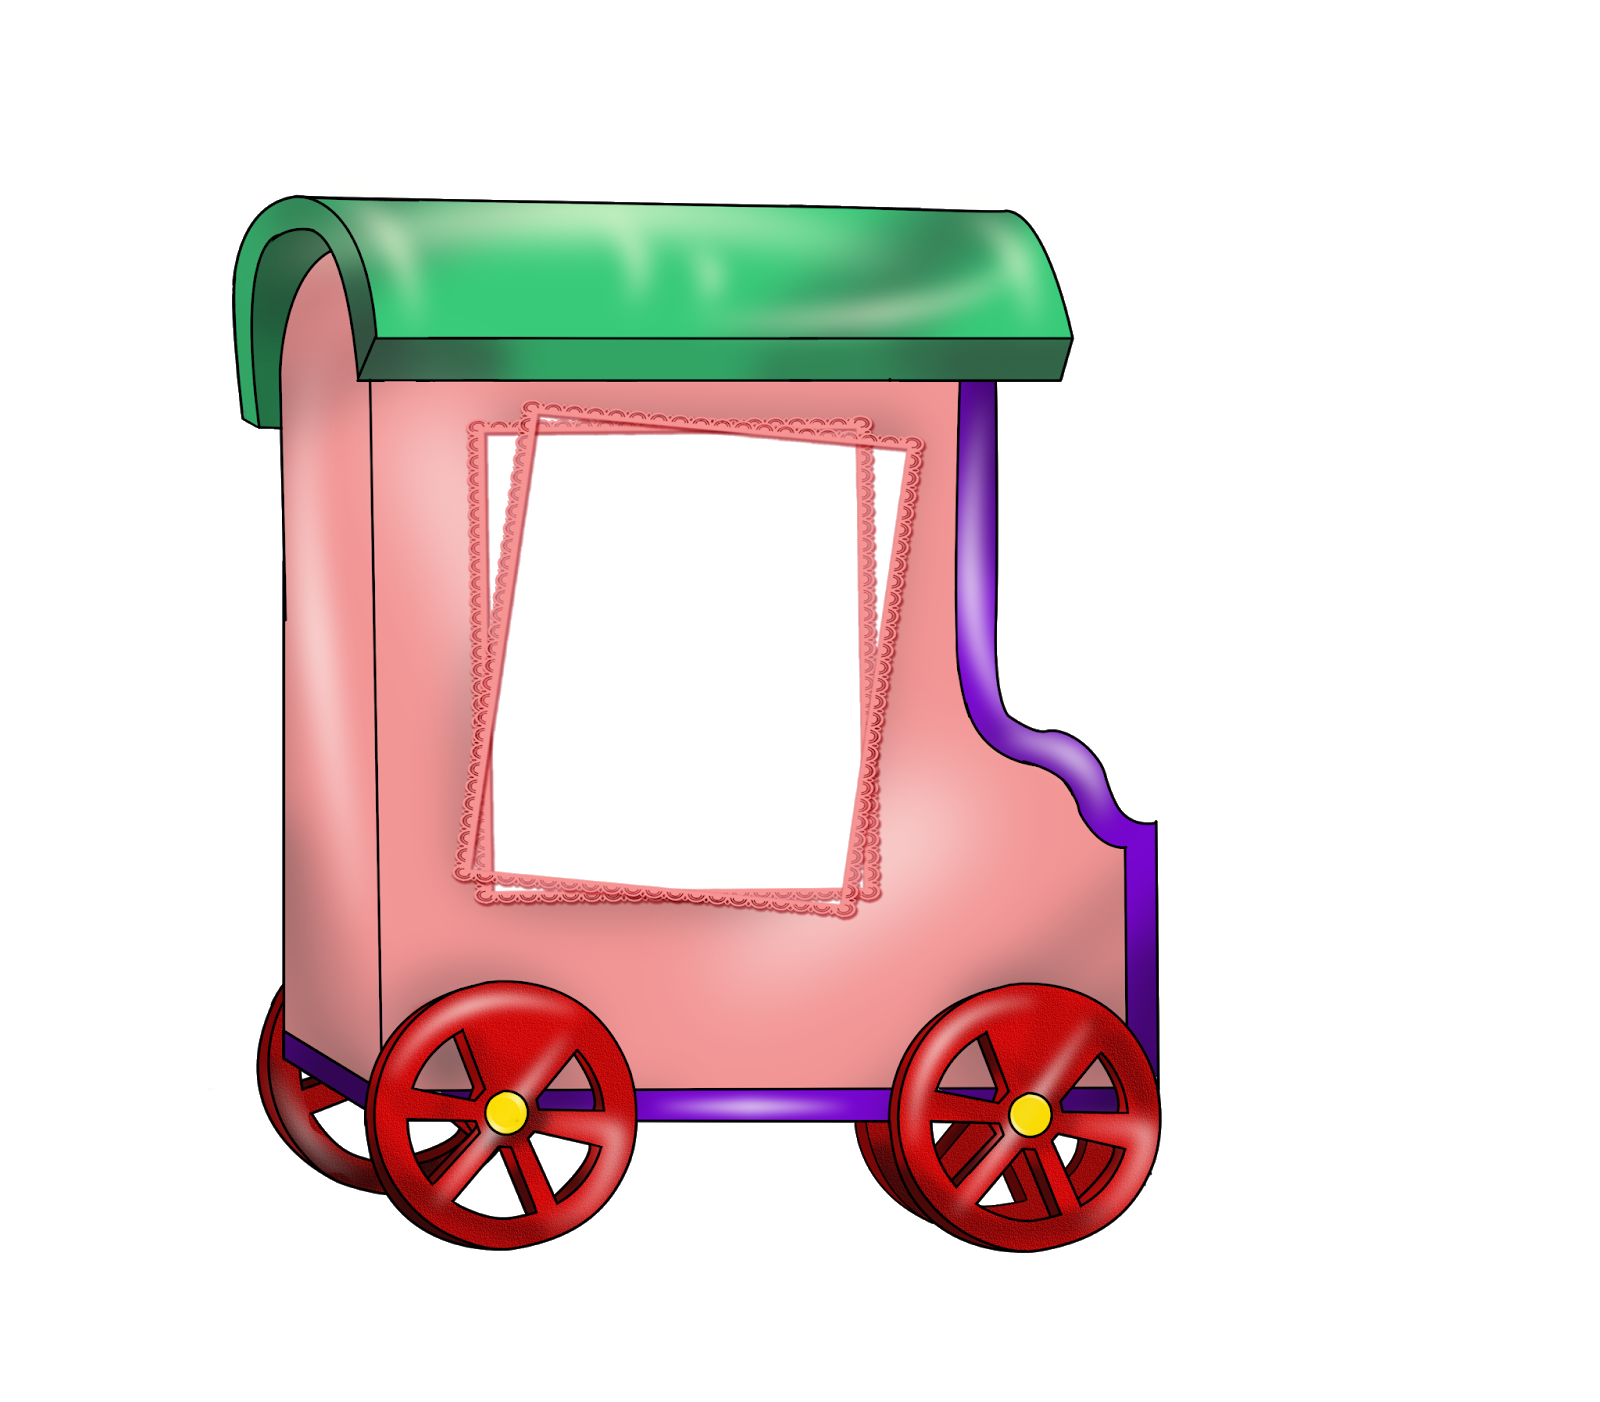 Паровоз с 6 вагонами. Паровозик из Ромашково вагончики. Паровозик с вагончиками для детей. Поезд с вагончиками для детей. Паровоз с вагонами для детей.